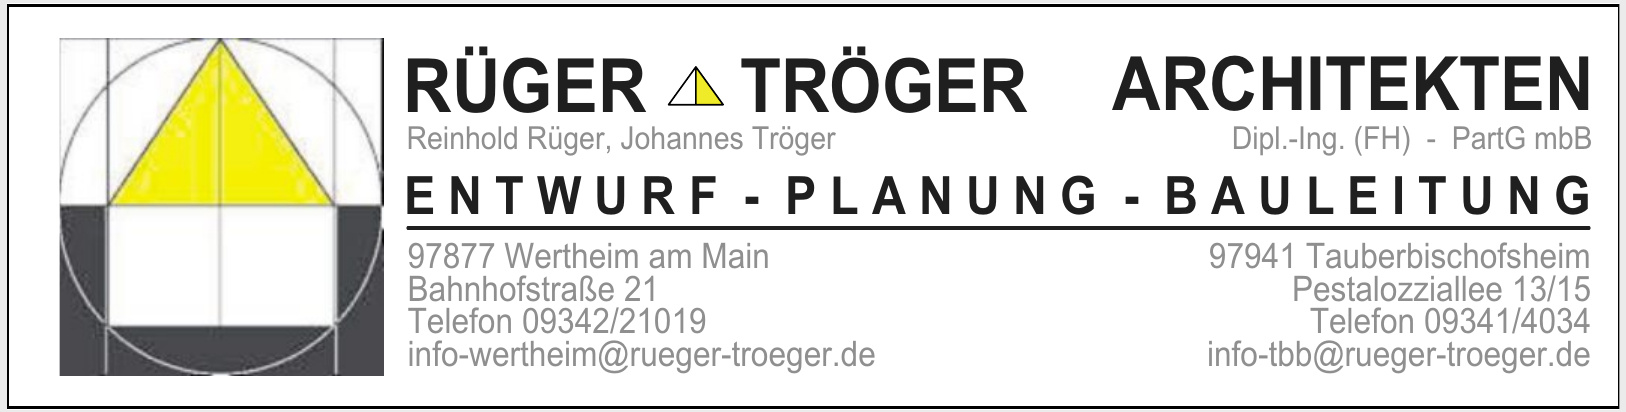 Rüger Trüger Architekten Dipl.-Ing. (FH) - PartG mbB